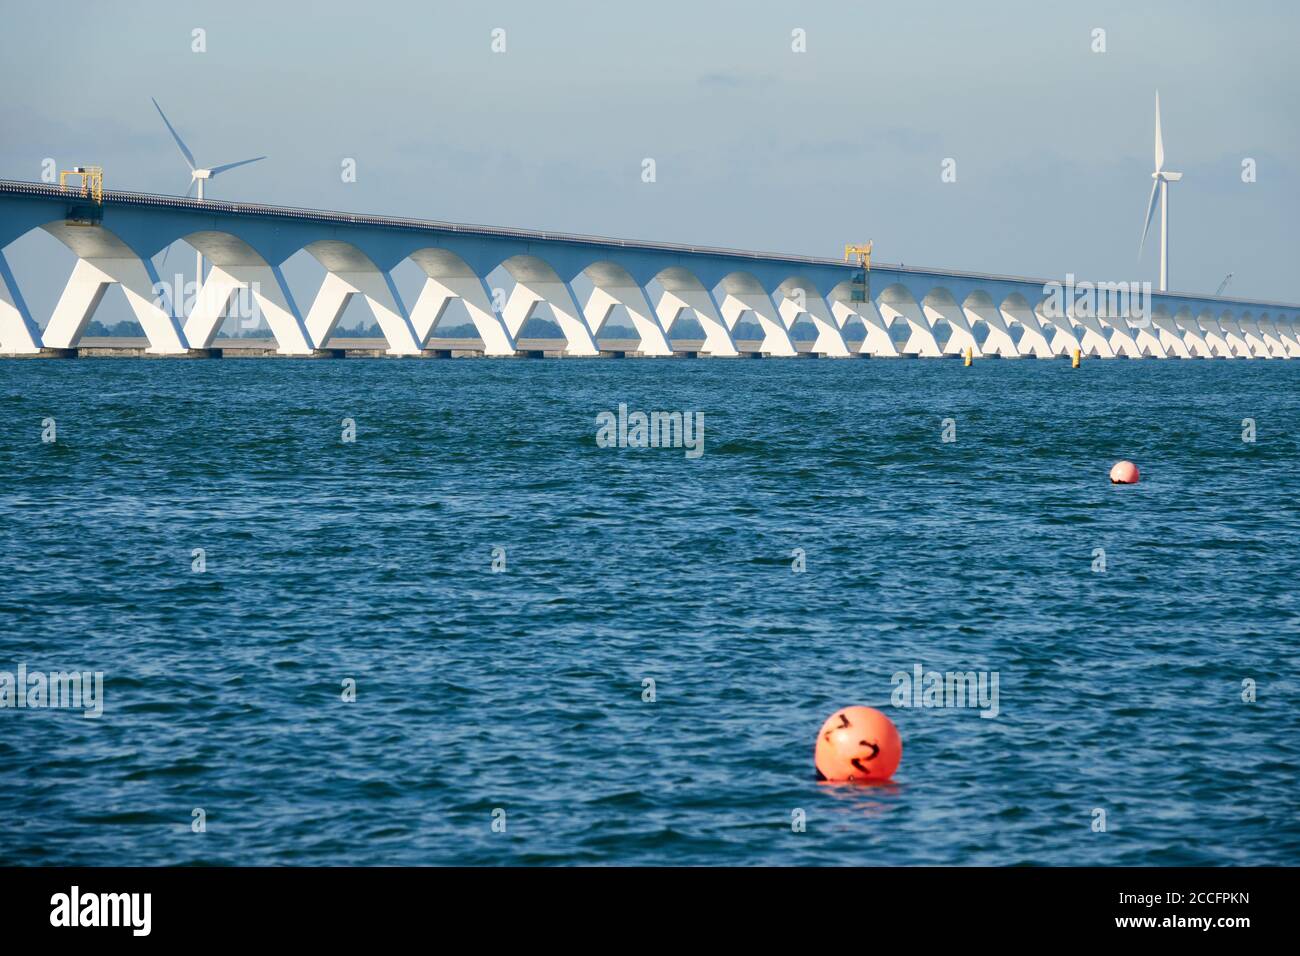 Lungo ponte Zeeland, acque blu profonde con una boa rossa, turbina eolica sullo sfondo. Paesi Bassi, Zelanda. Foto Stock